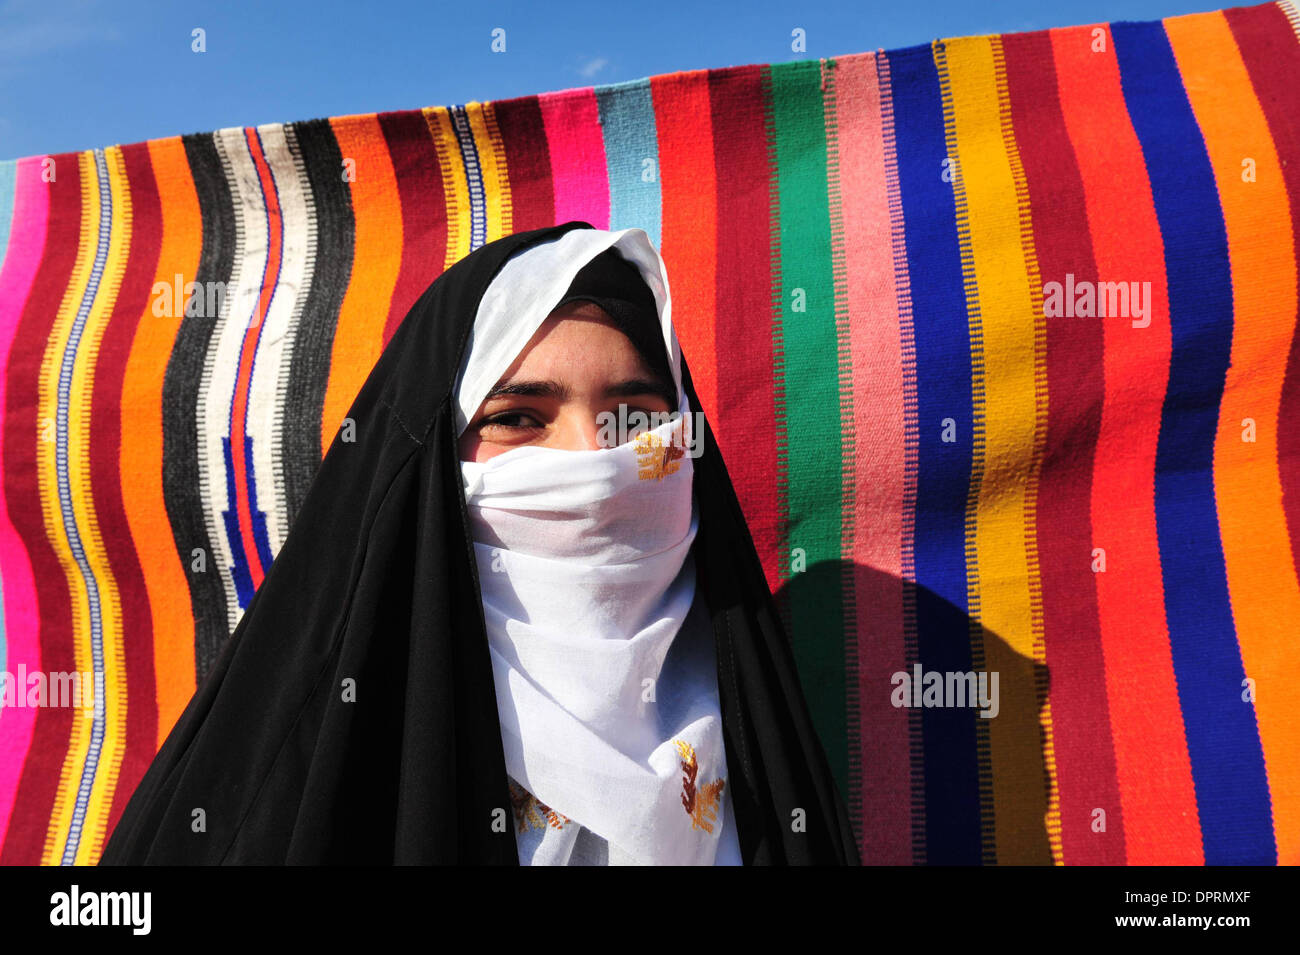 Nov 25, 2008 - Rahat, Israël - Femme portant burqa la vente de tapis et de poteries enveloppé dans du tissu. En Israël, des dizaines de milliers de Bédouins arabes craignent que le gouvernement israélien veut s'approprier des terres qu'ils disent leur appartient et de mettre fin à leur mode de vie nomade traditionnel. Les Bédouins arabes israéliens sont 160 000 citoyens israéliens, qui vivent dans ce qu'on appelle des "villages non reconnus" t Banque D'Images